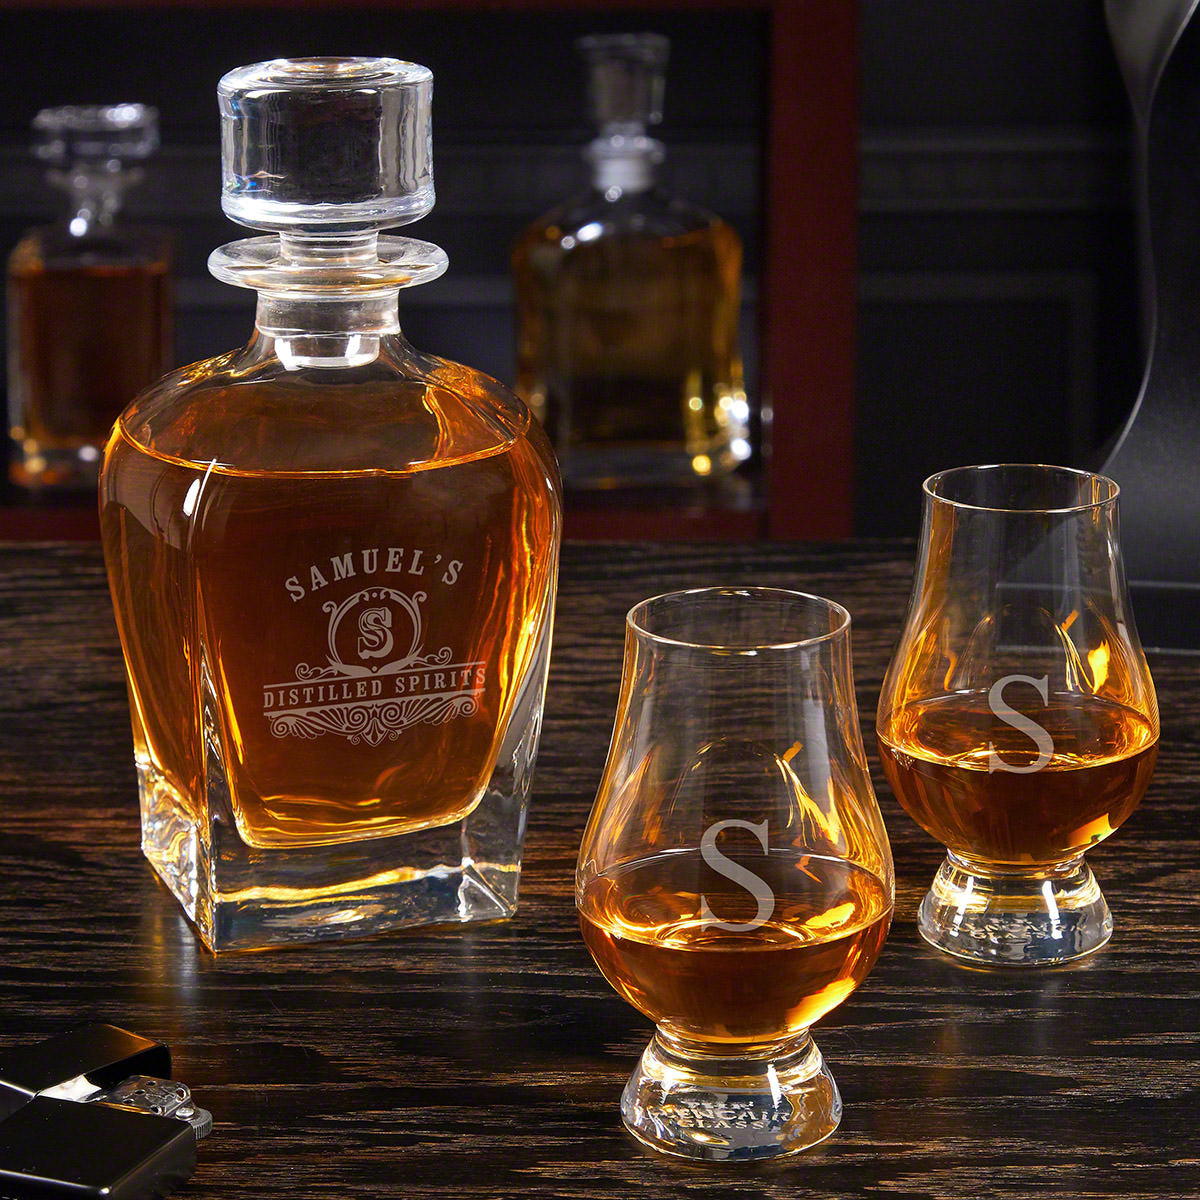 Engraved Draper Whiskey Decanter Set with Glencairn Glasses